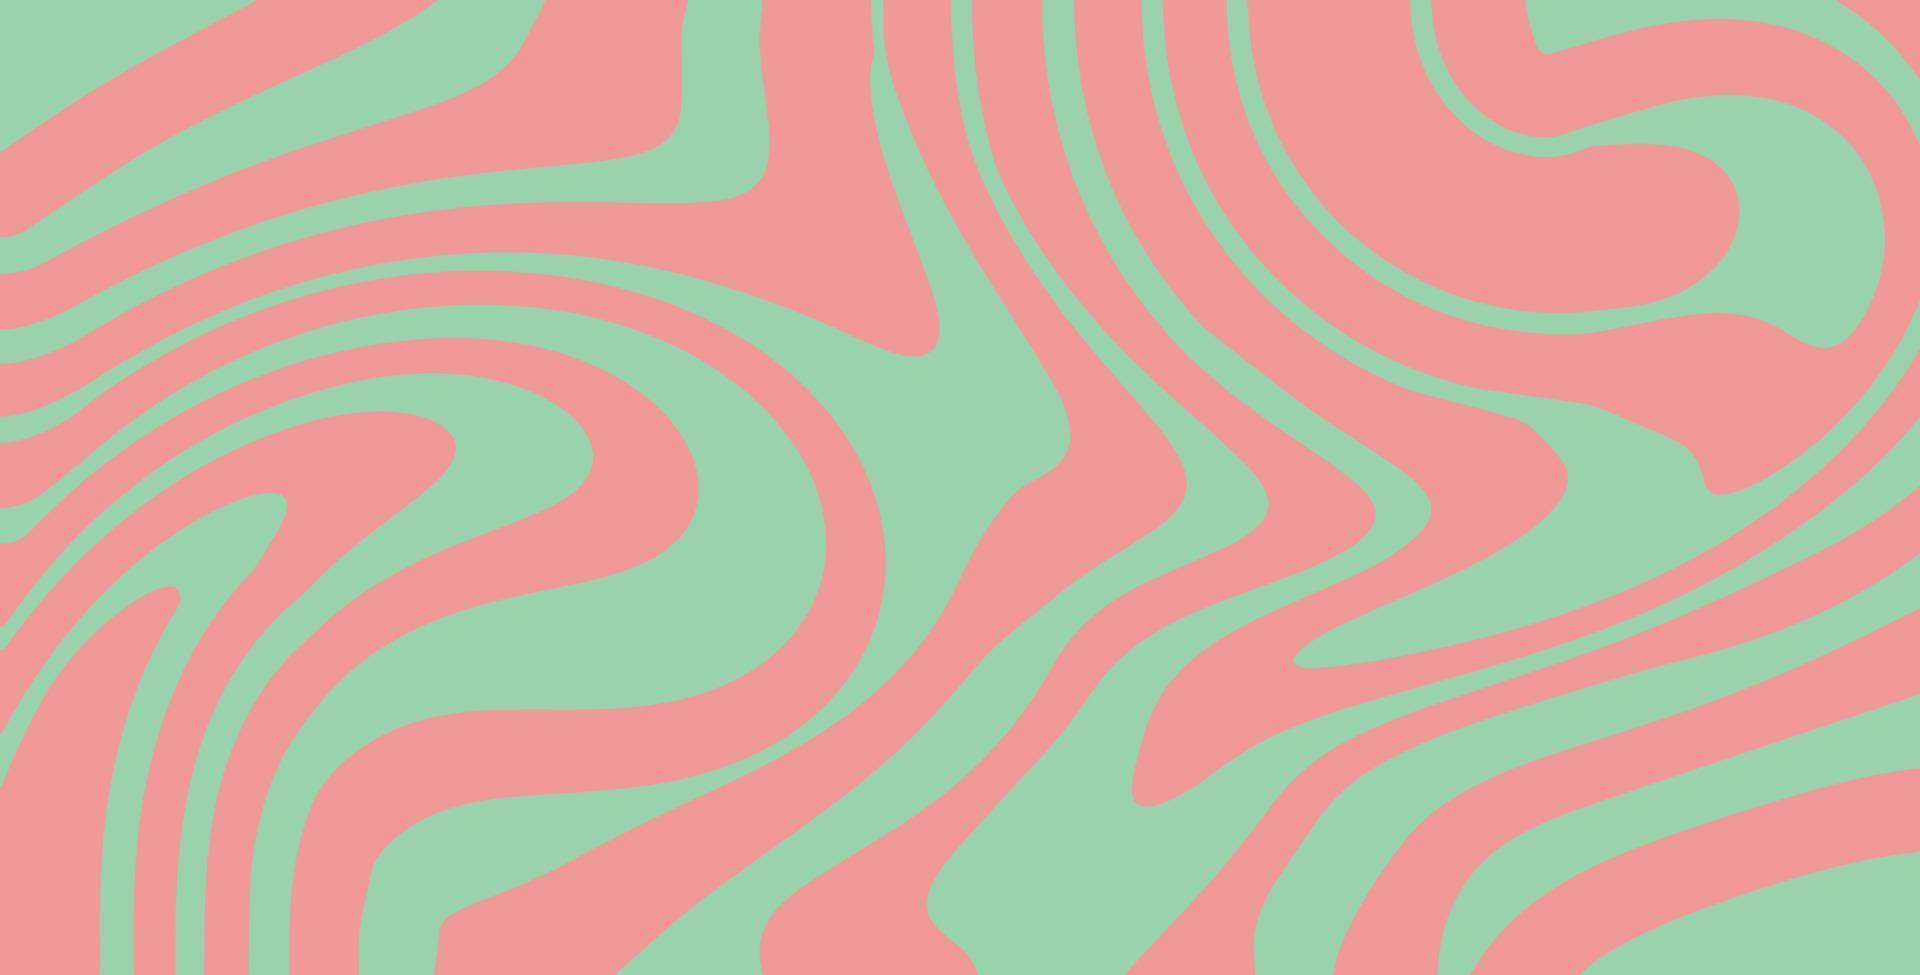 ondulato turbine Groovy modello su rosso e rosa colori. anni settanta stile, hippie sfondo, psichedelico onda sfondo. mano disegnato piatto vettore illustrazione